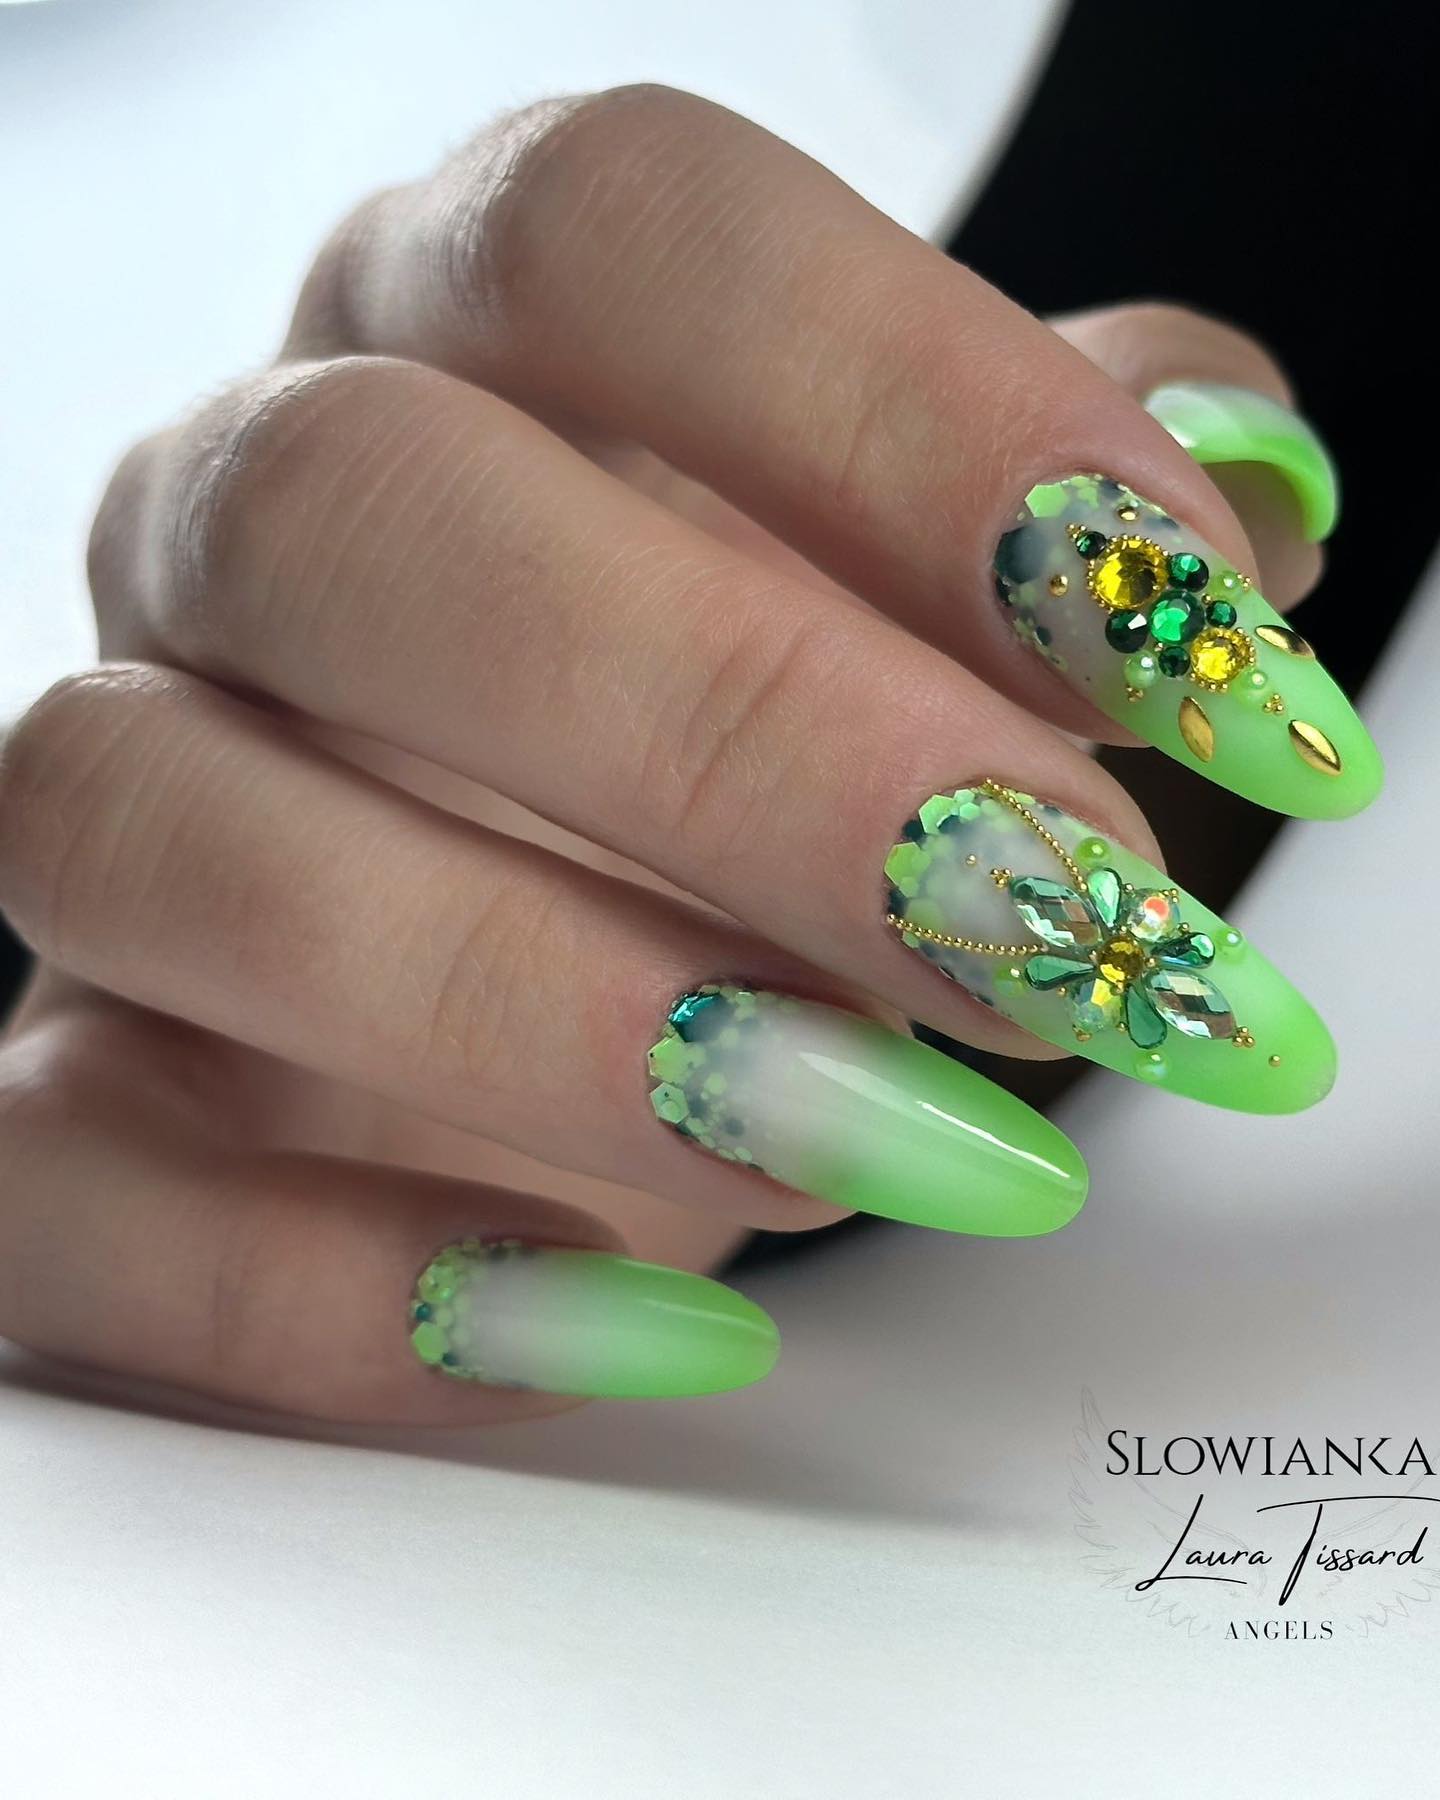 лаймово-зеленые ногти омбре с блестками и стразами